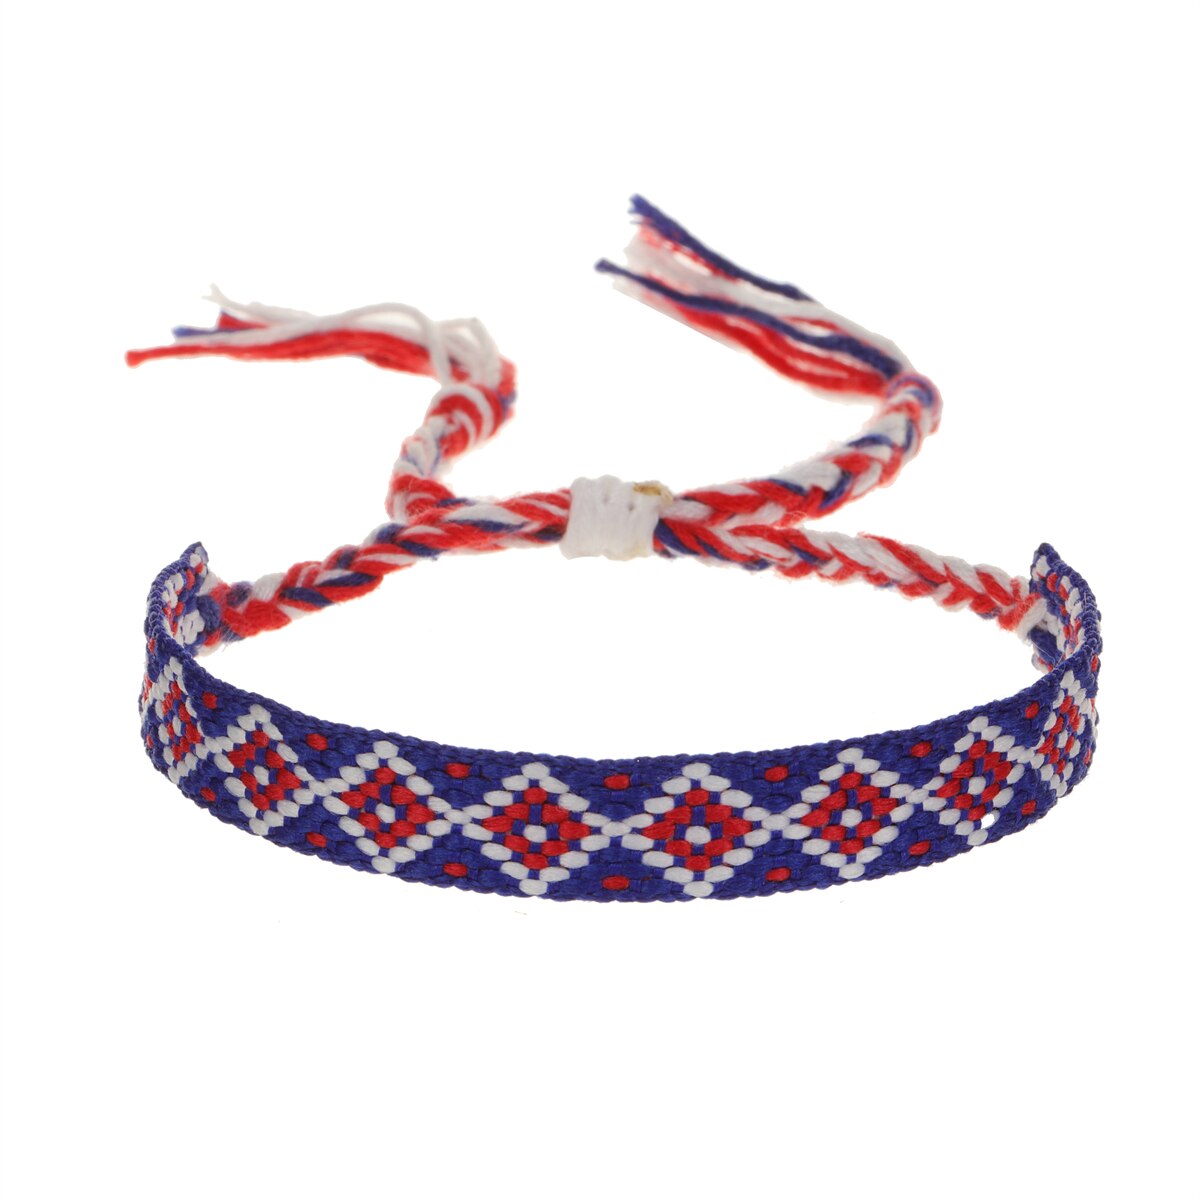 Handmade Woven Friendship Bracelets for Women Men Colorful Boho Surfer Bracelets Braided String Summer Beach Ankle Adjustable